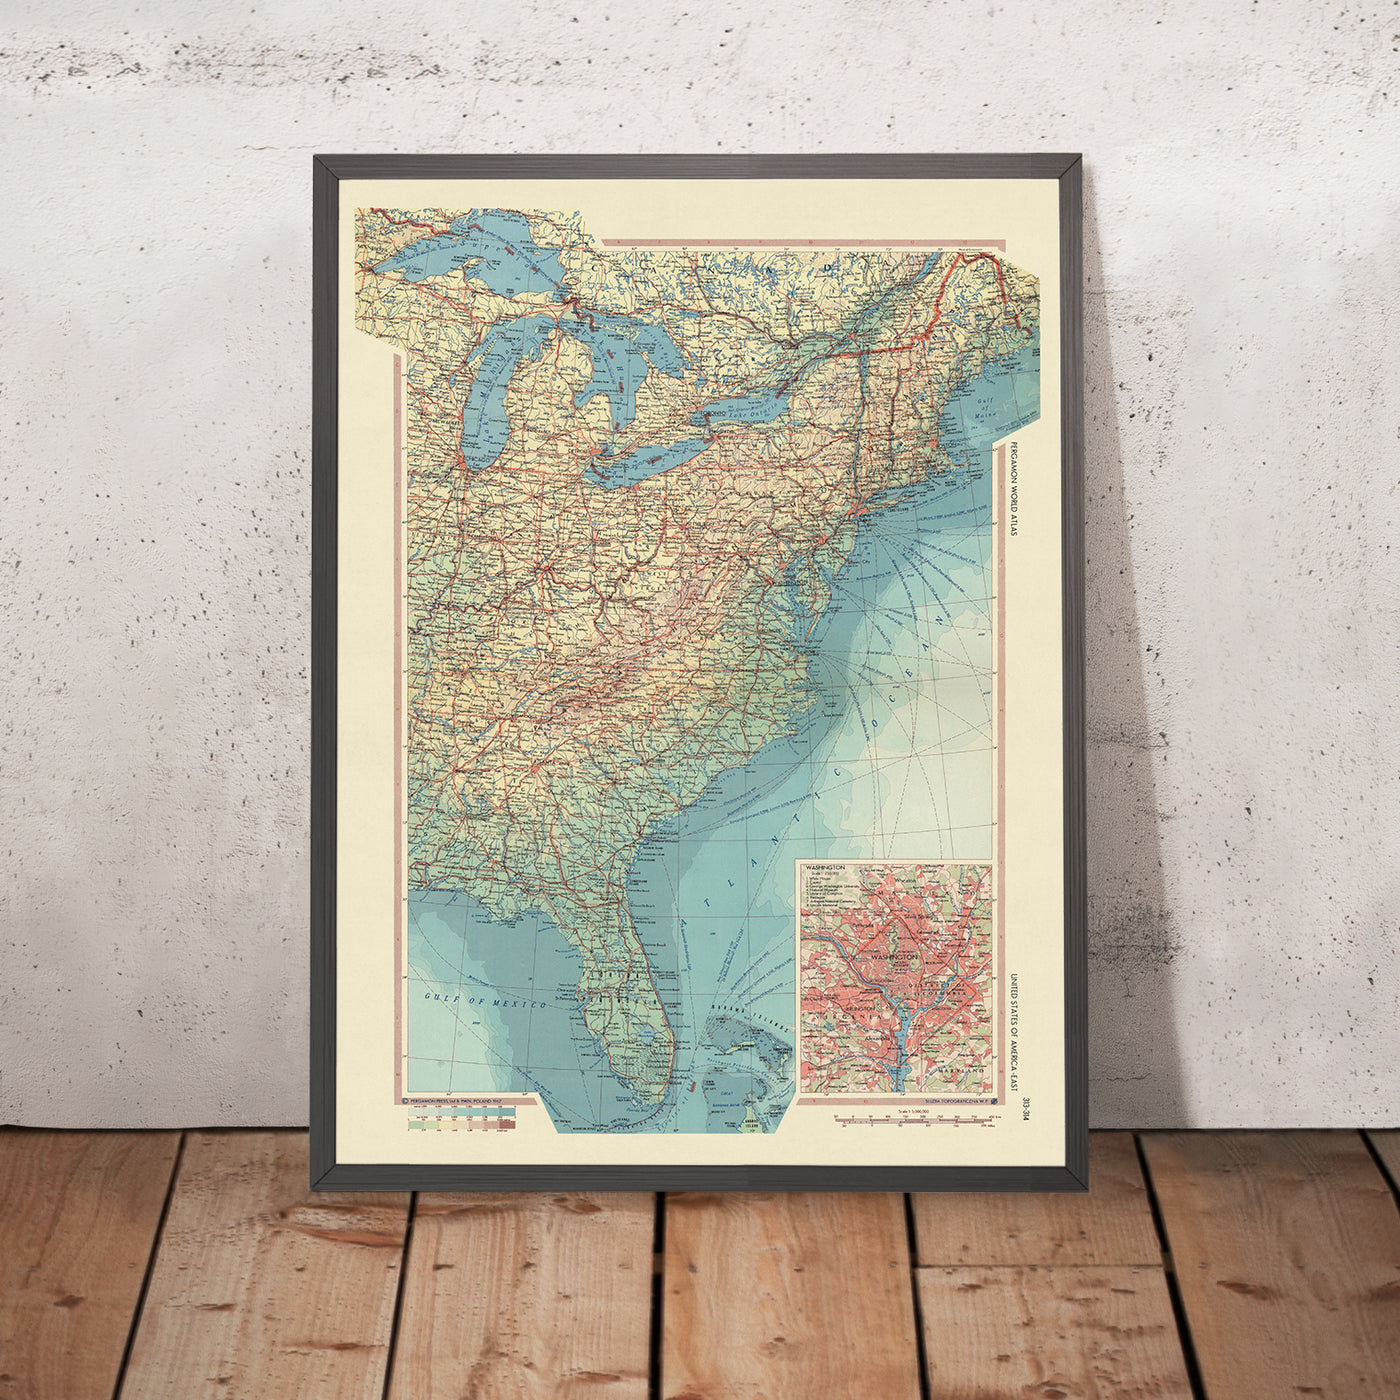 Ancienne carte des États-Unis par le service topographique de l'armée polonaise, 1967 : New York, Chicago, Washington DC, Grands Lacs, fleuve Mississippi